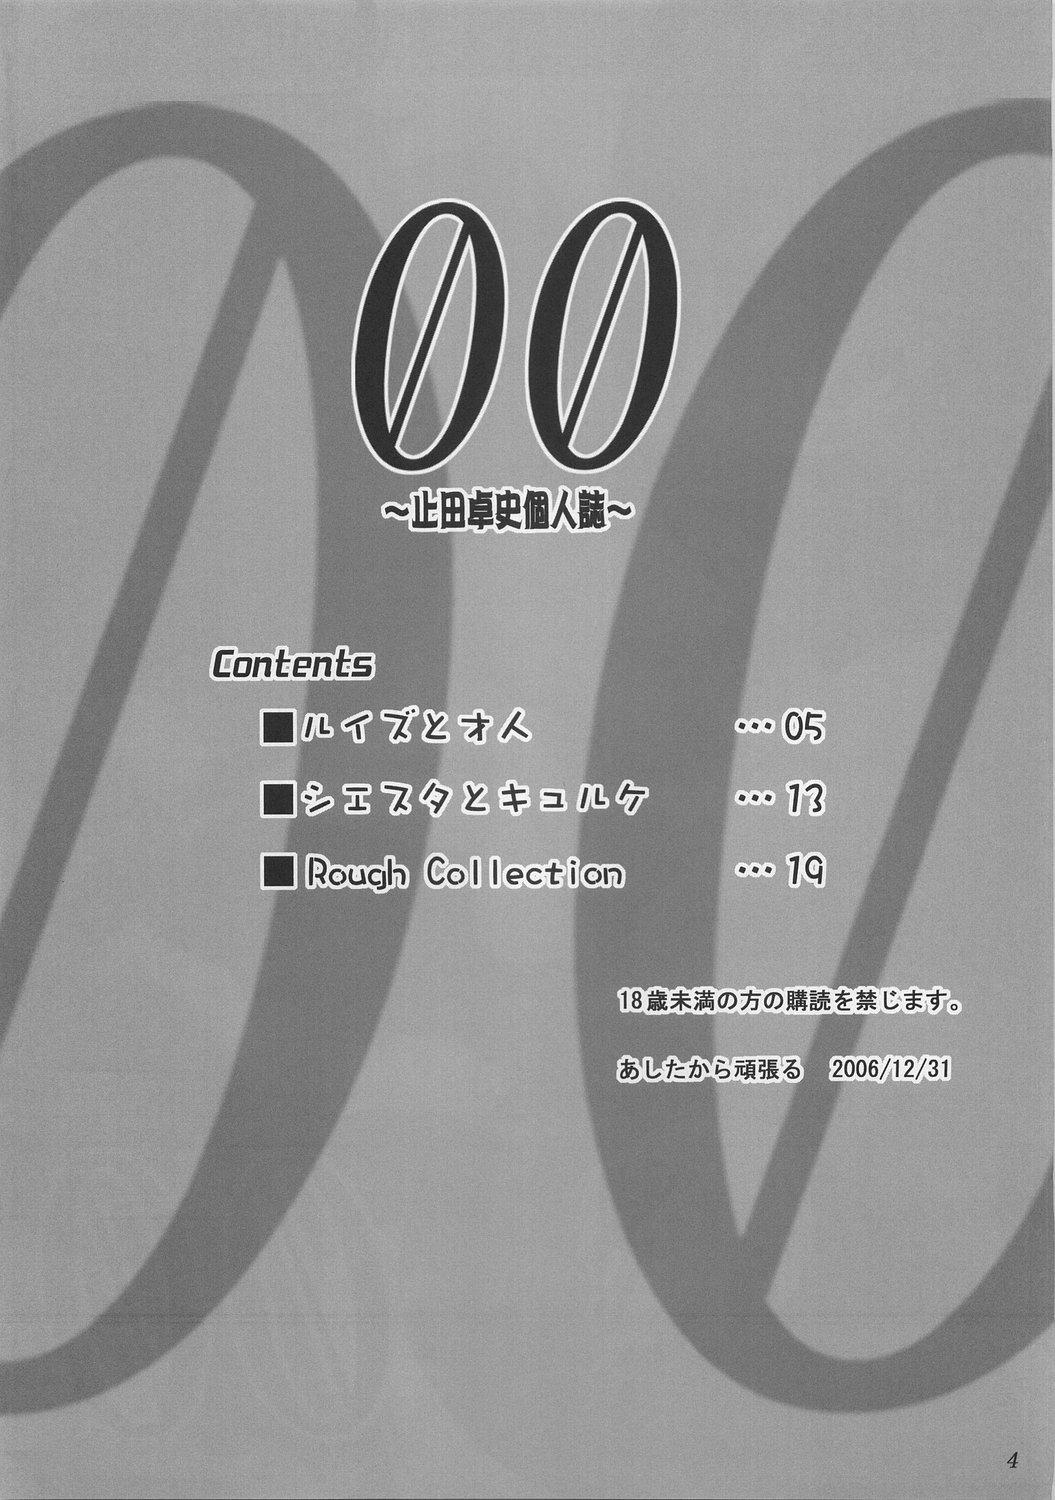 Gang 00 - Zero no tsukaima Music - Page 3